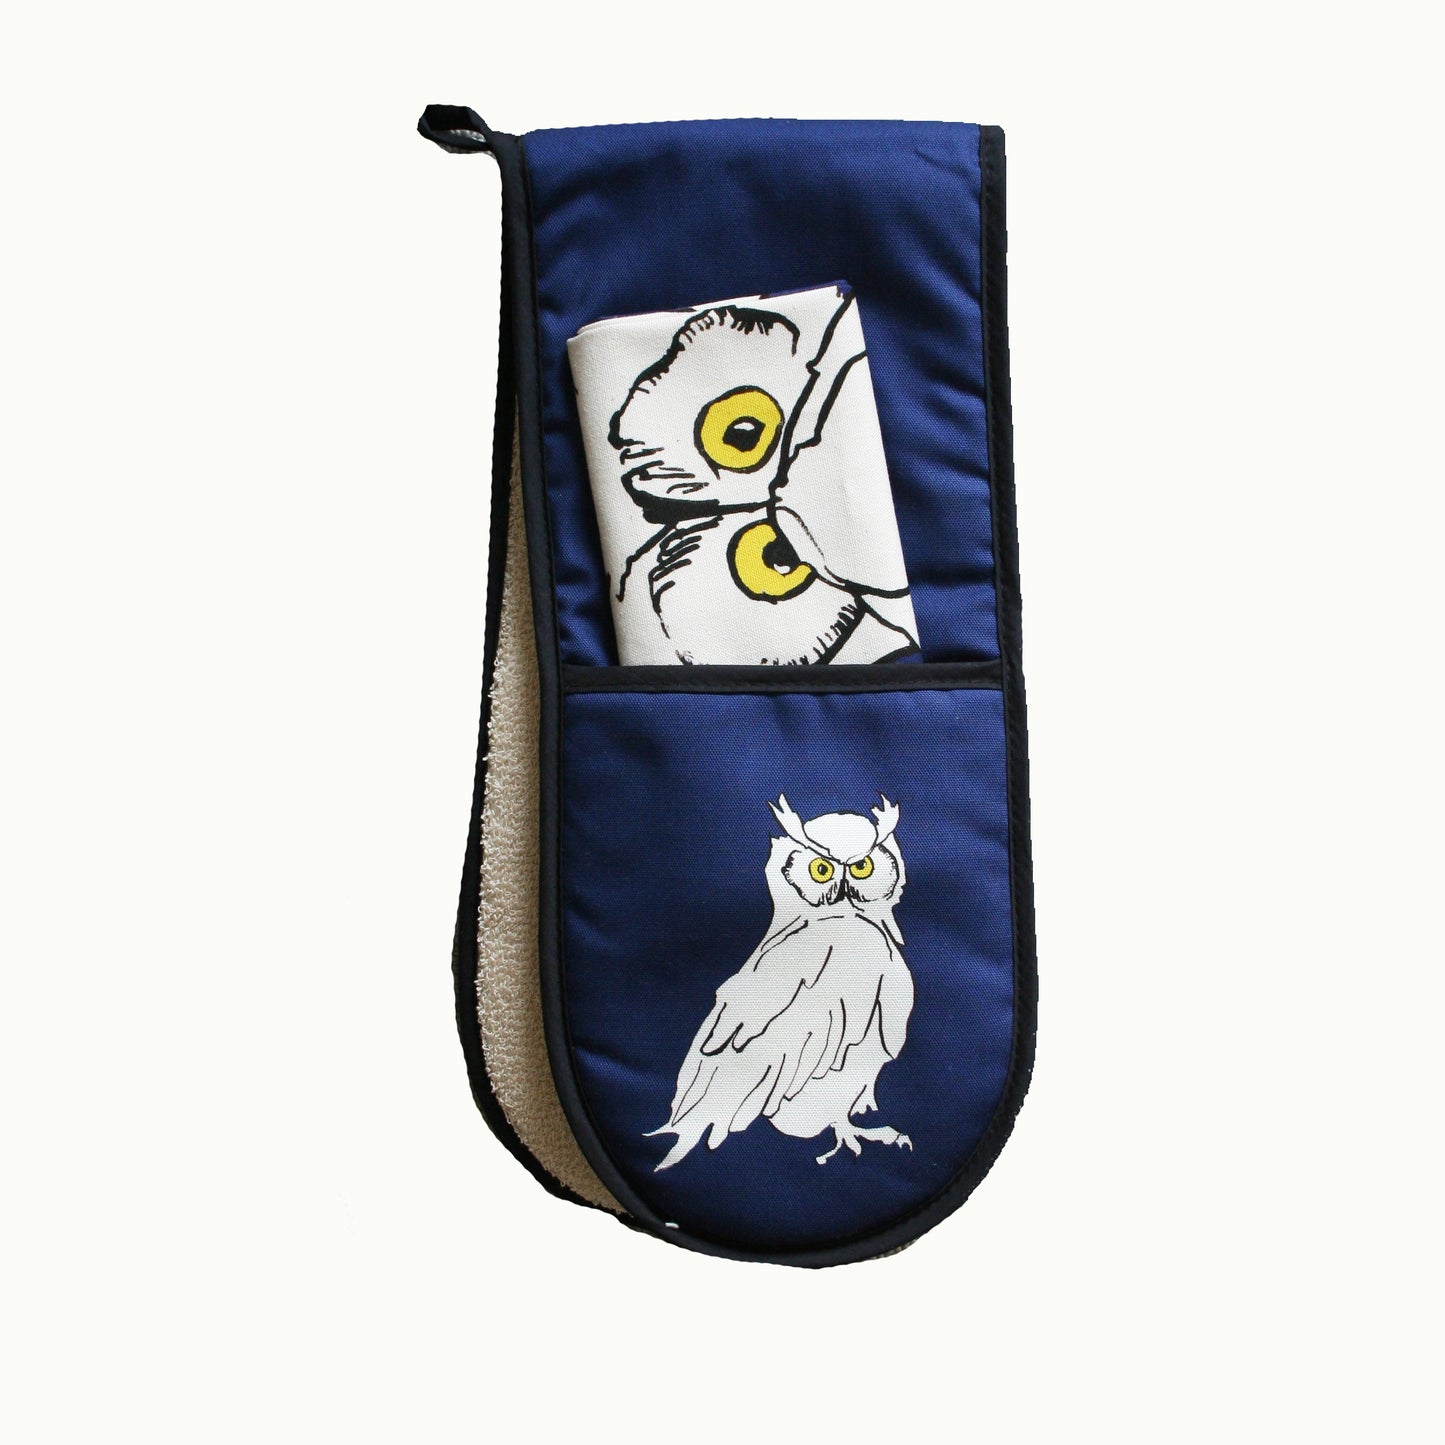 Owl Oven Gloves